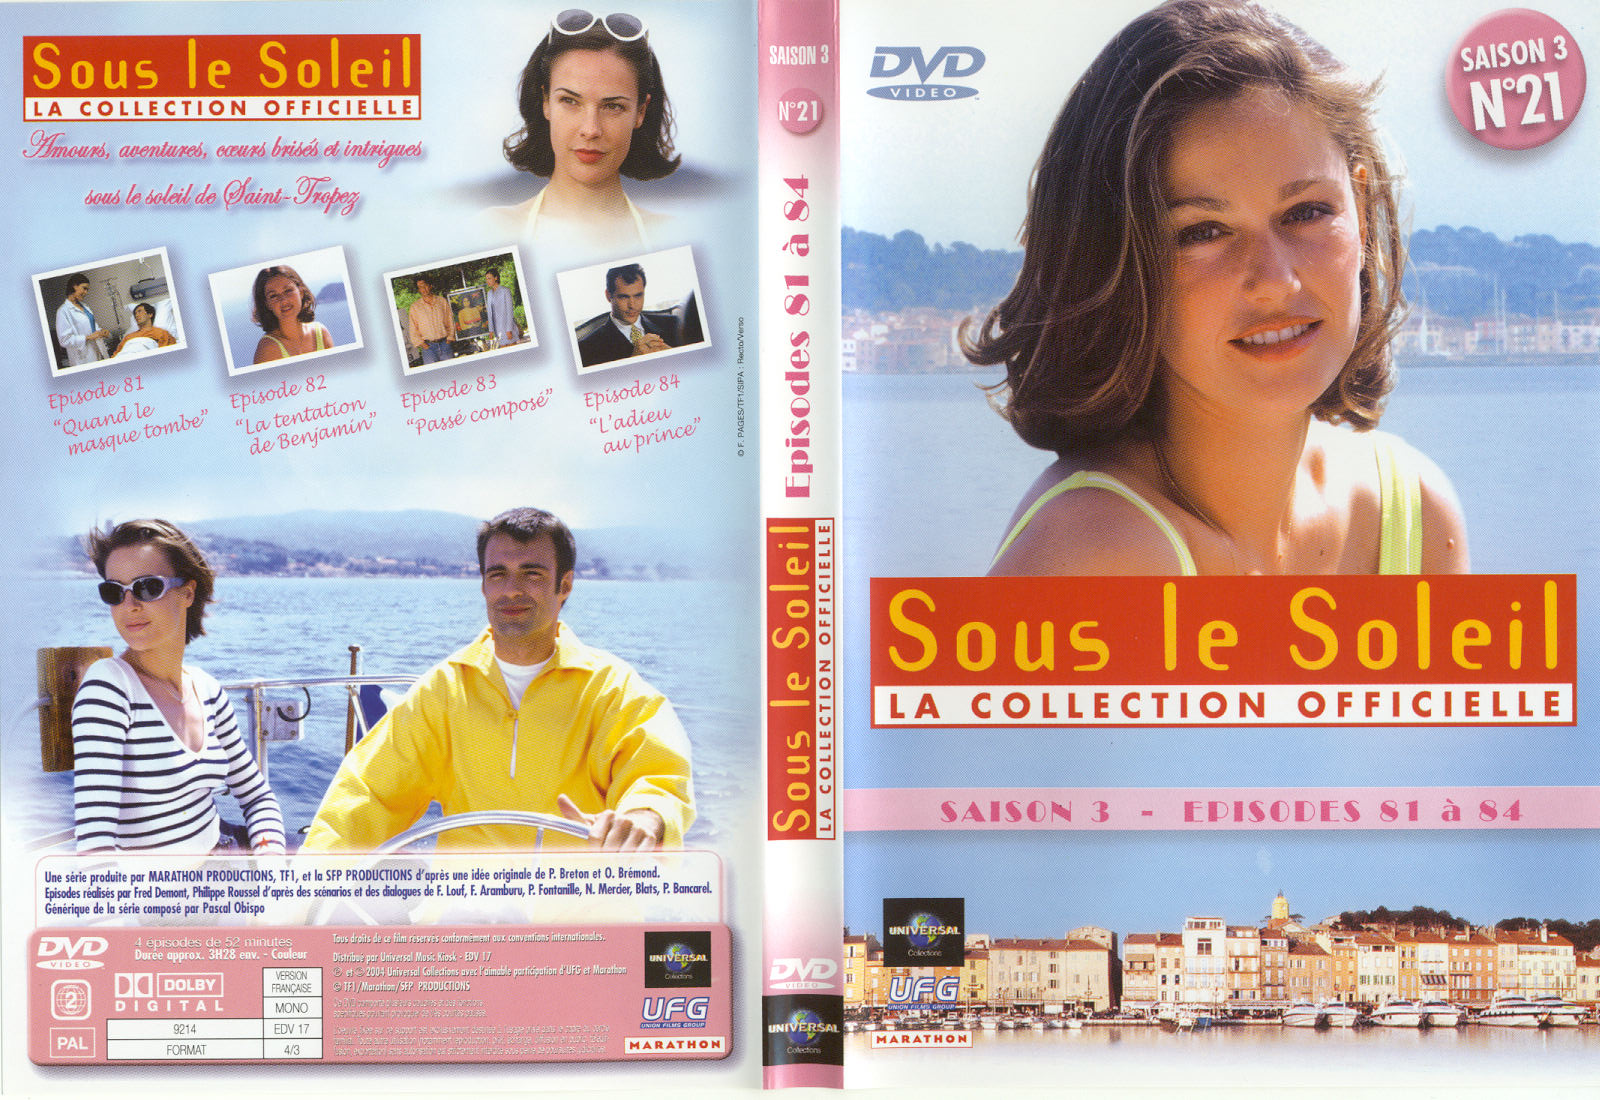 Jaquette DVD Sous le soleil saison 3 vol 21